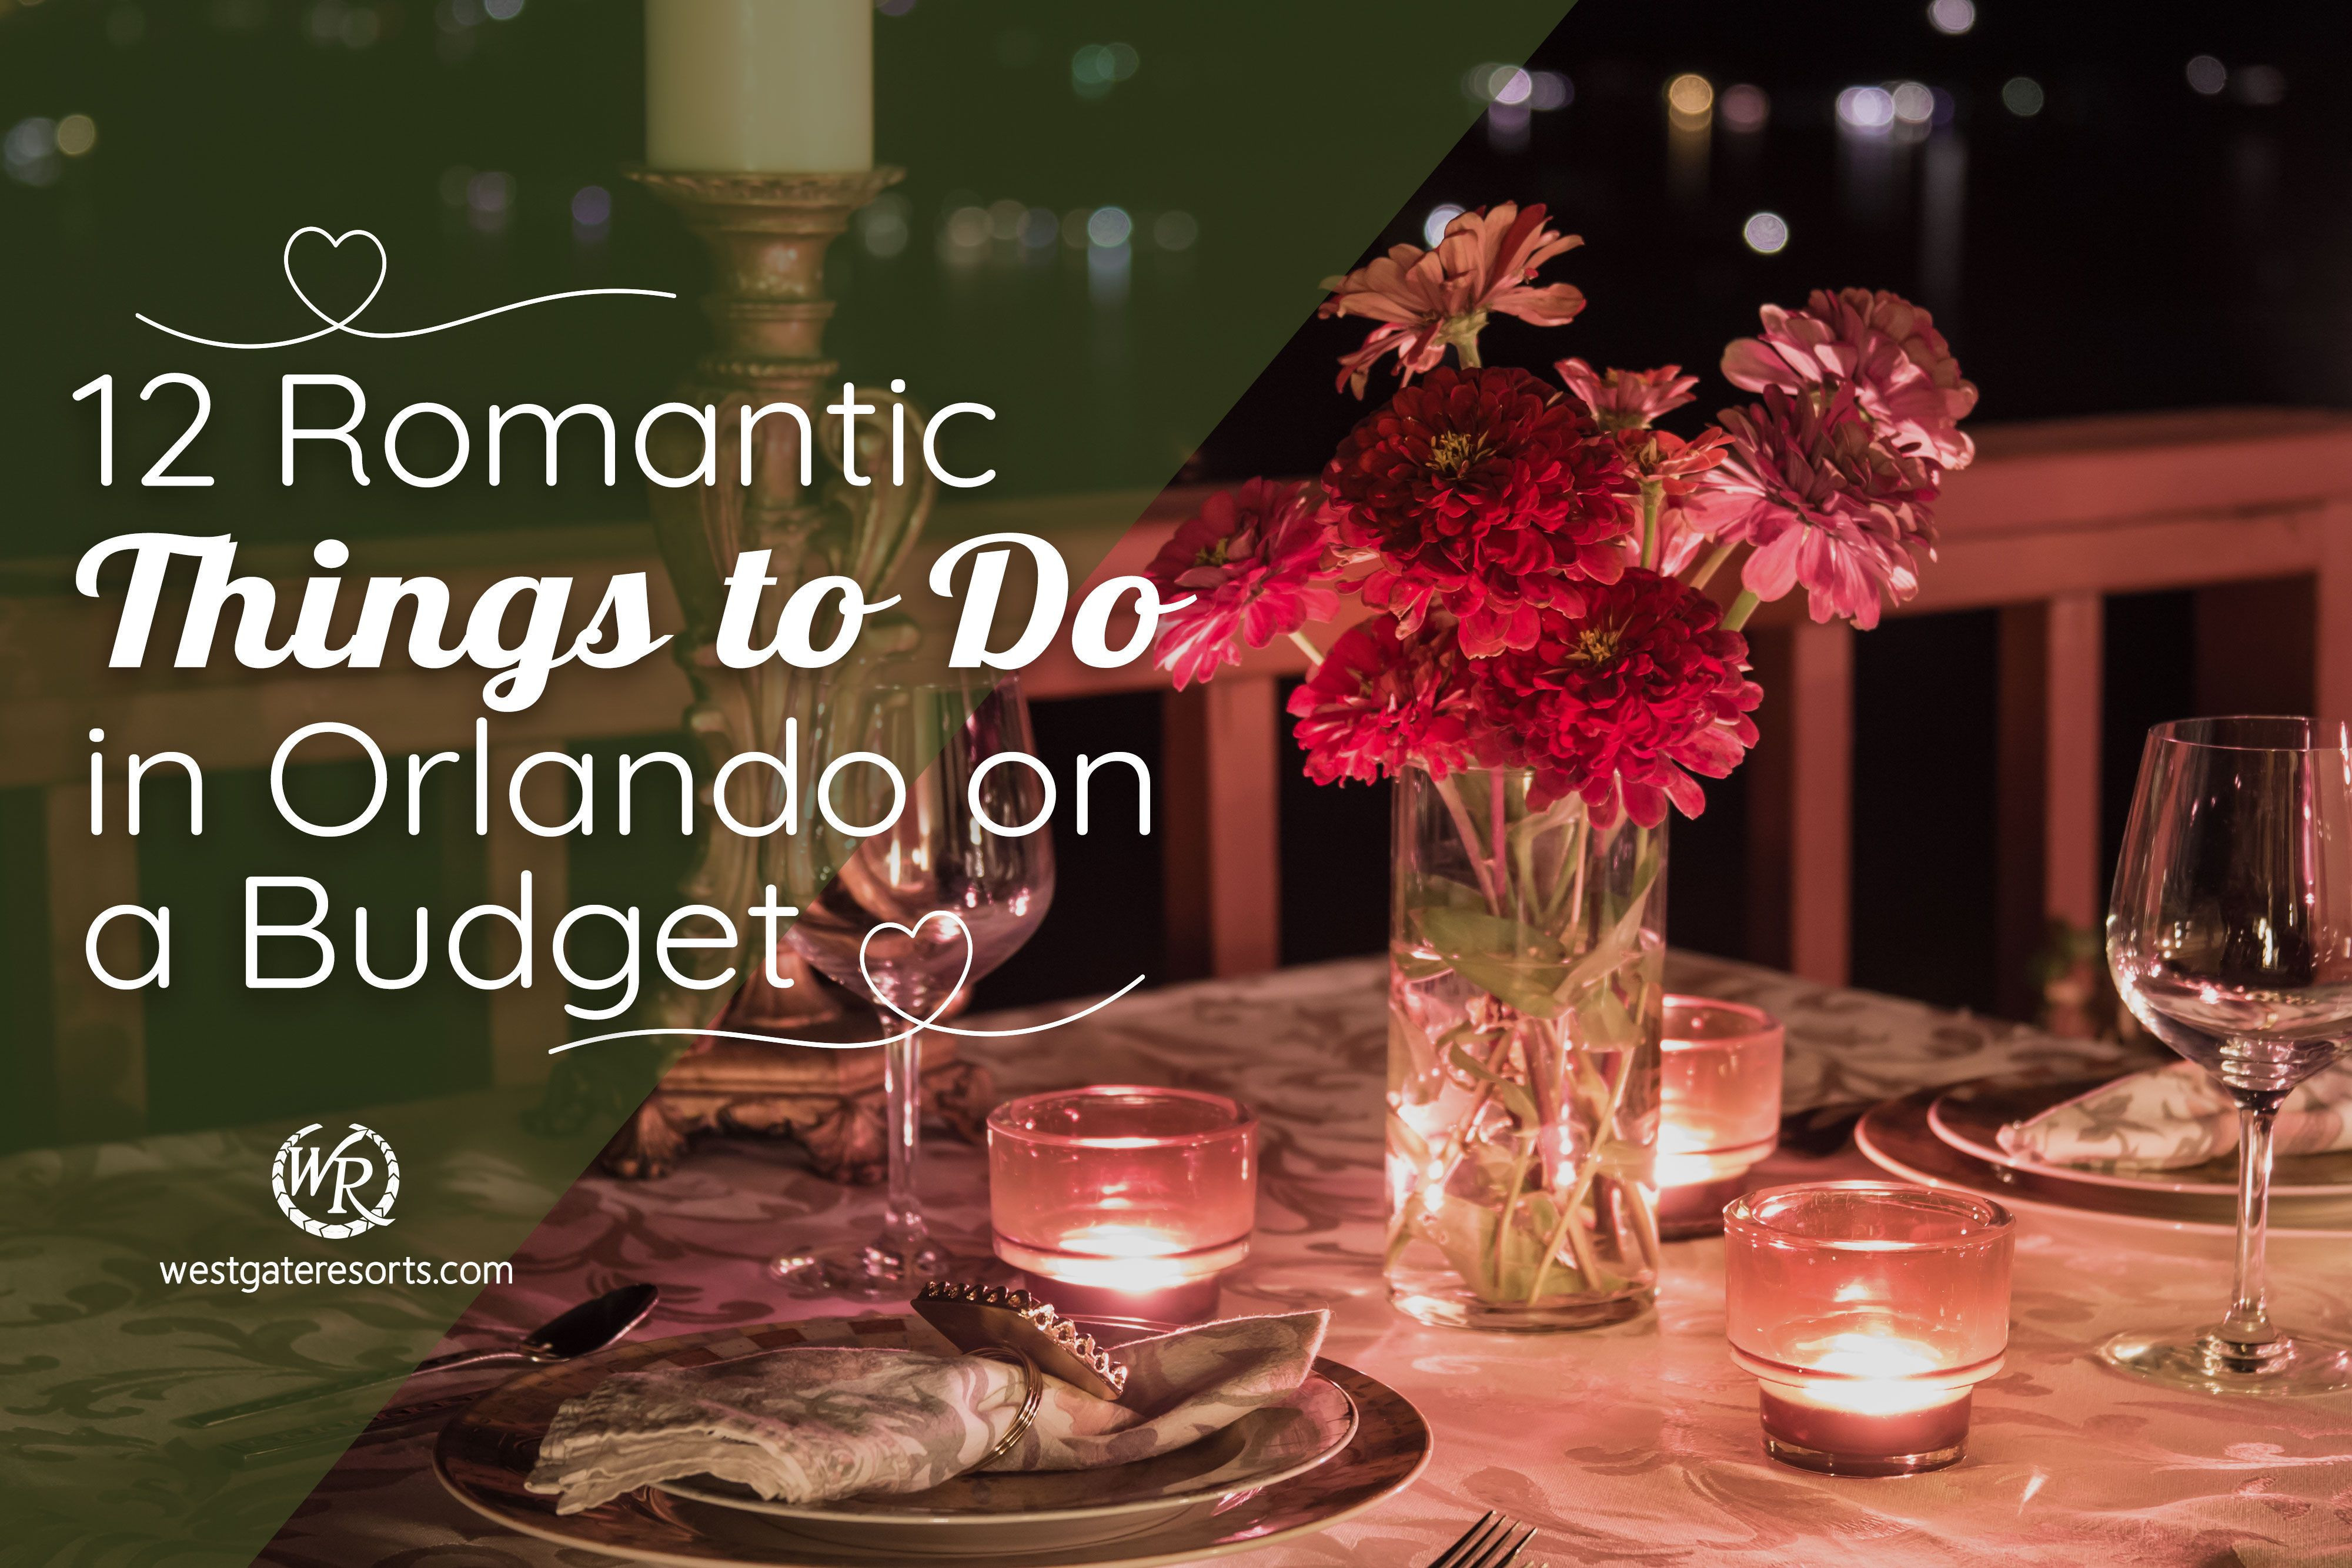 12 cosas románticas para hacer en Orlando con poco presupuesto